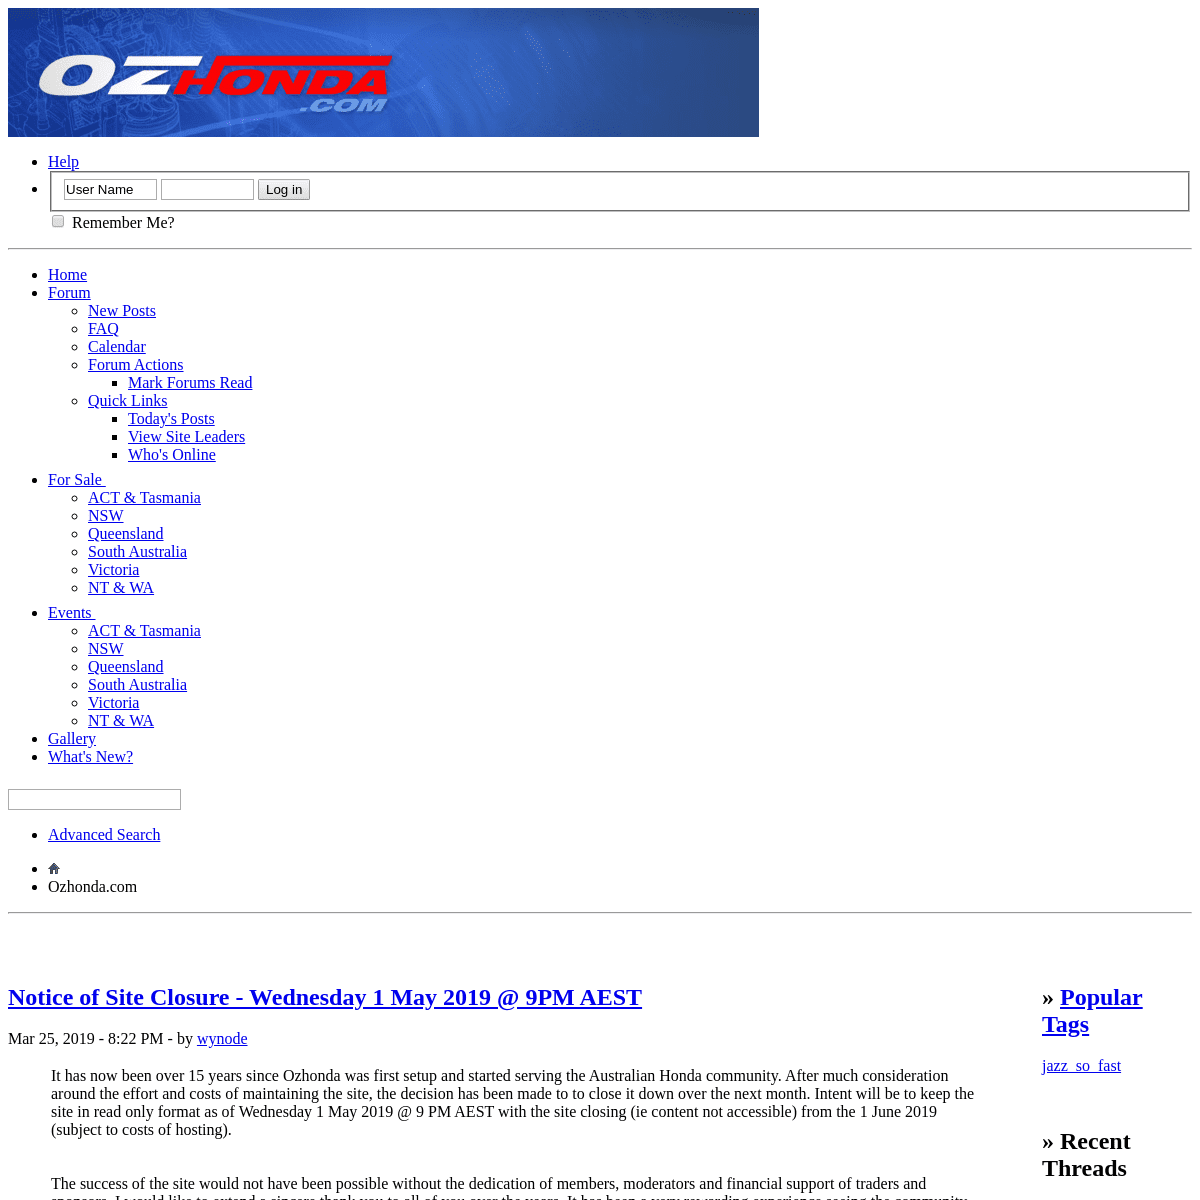 A complete backup of ozhonda.com